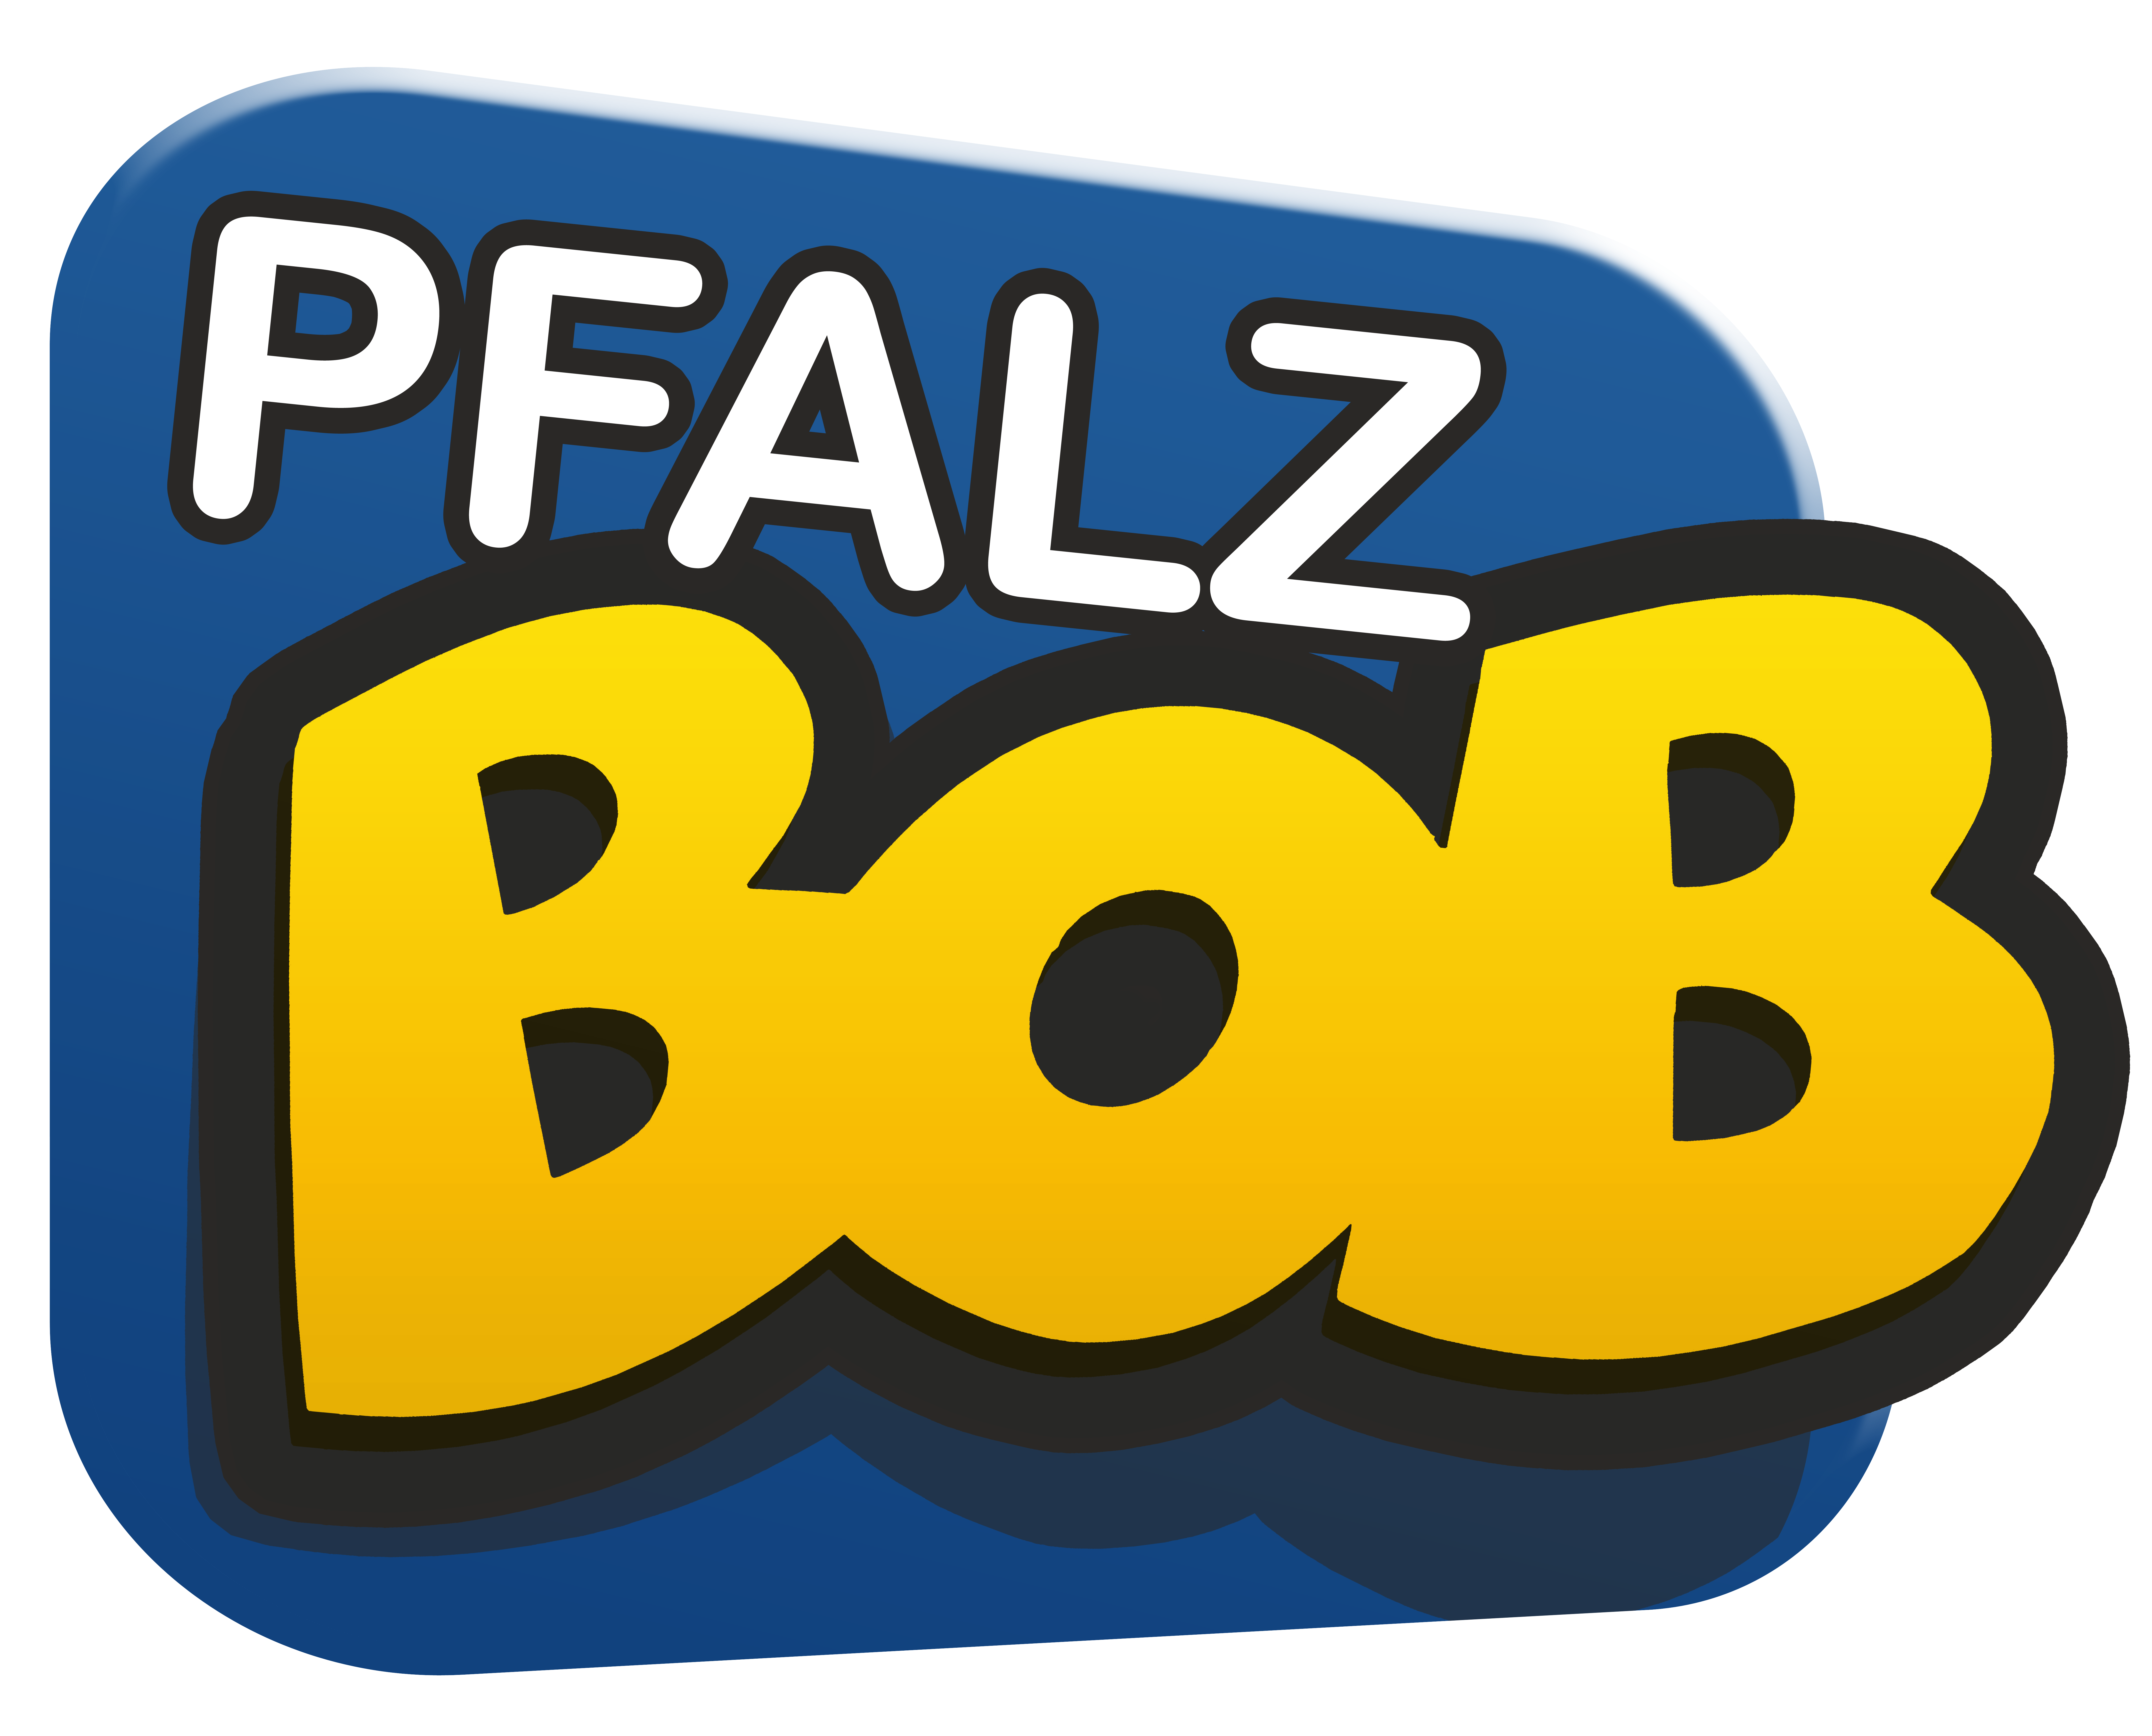 (c) Pfalz-bob.de